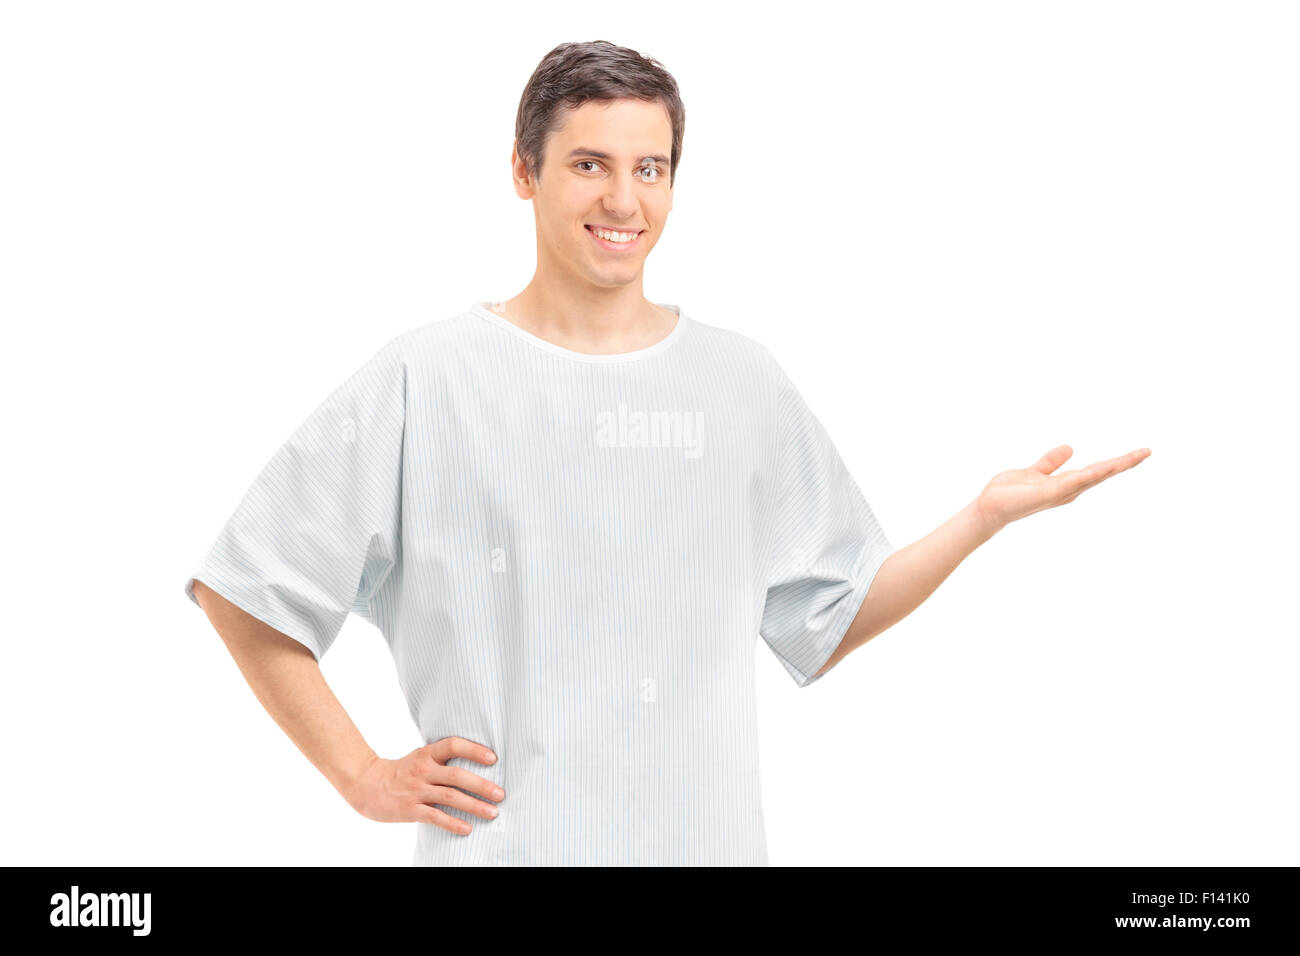 Junge männliche Patienten in einem Krankenhauskleid mit seiner Hand gestikulieren und schaut in die Kamera, die isoliert auf weißem Hintergrund Stockfoto